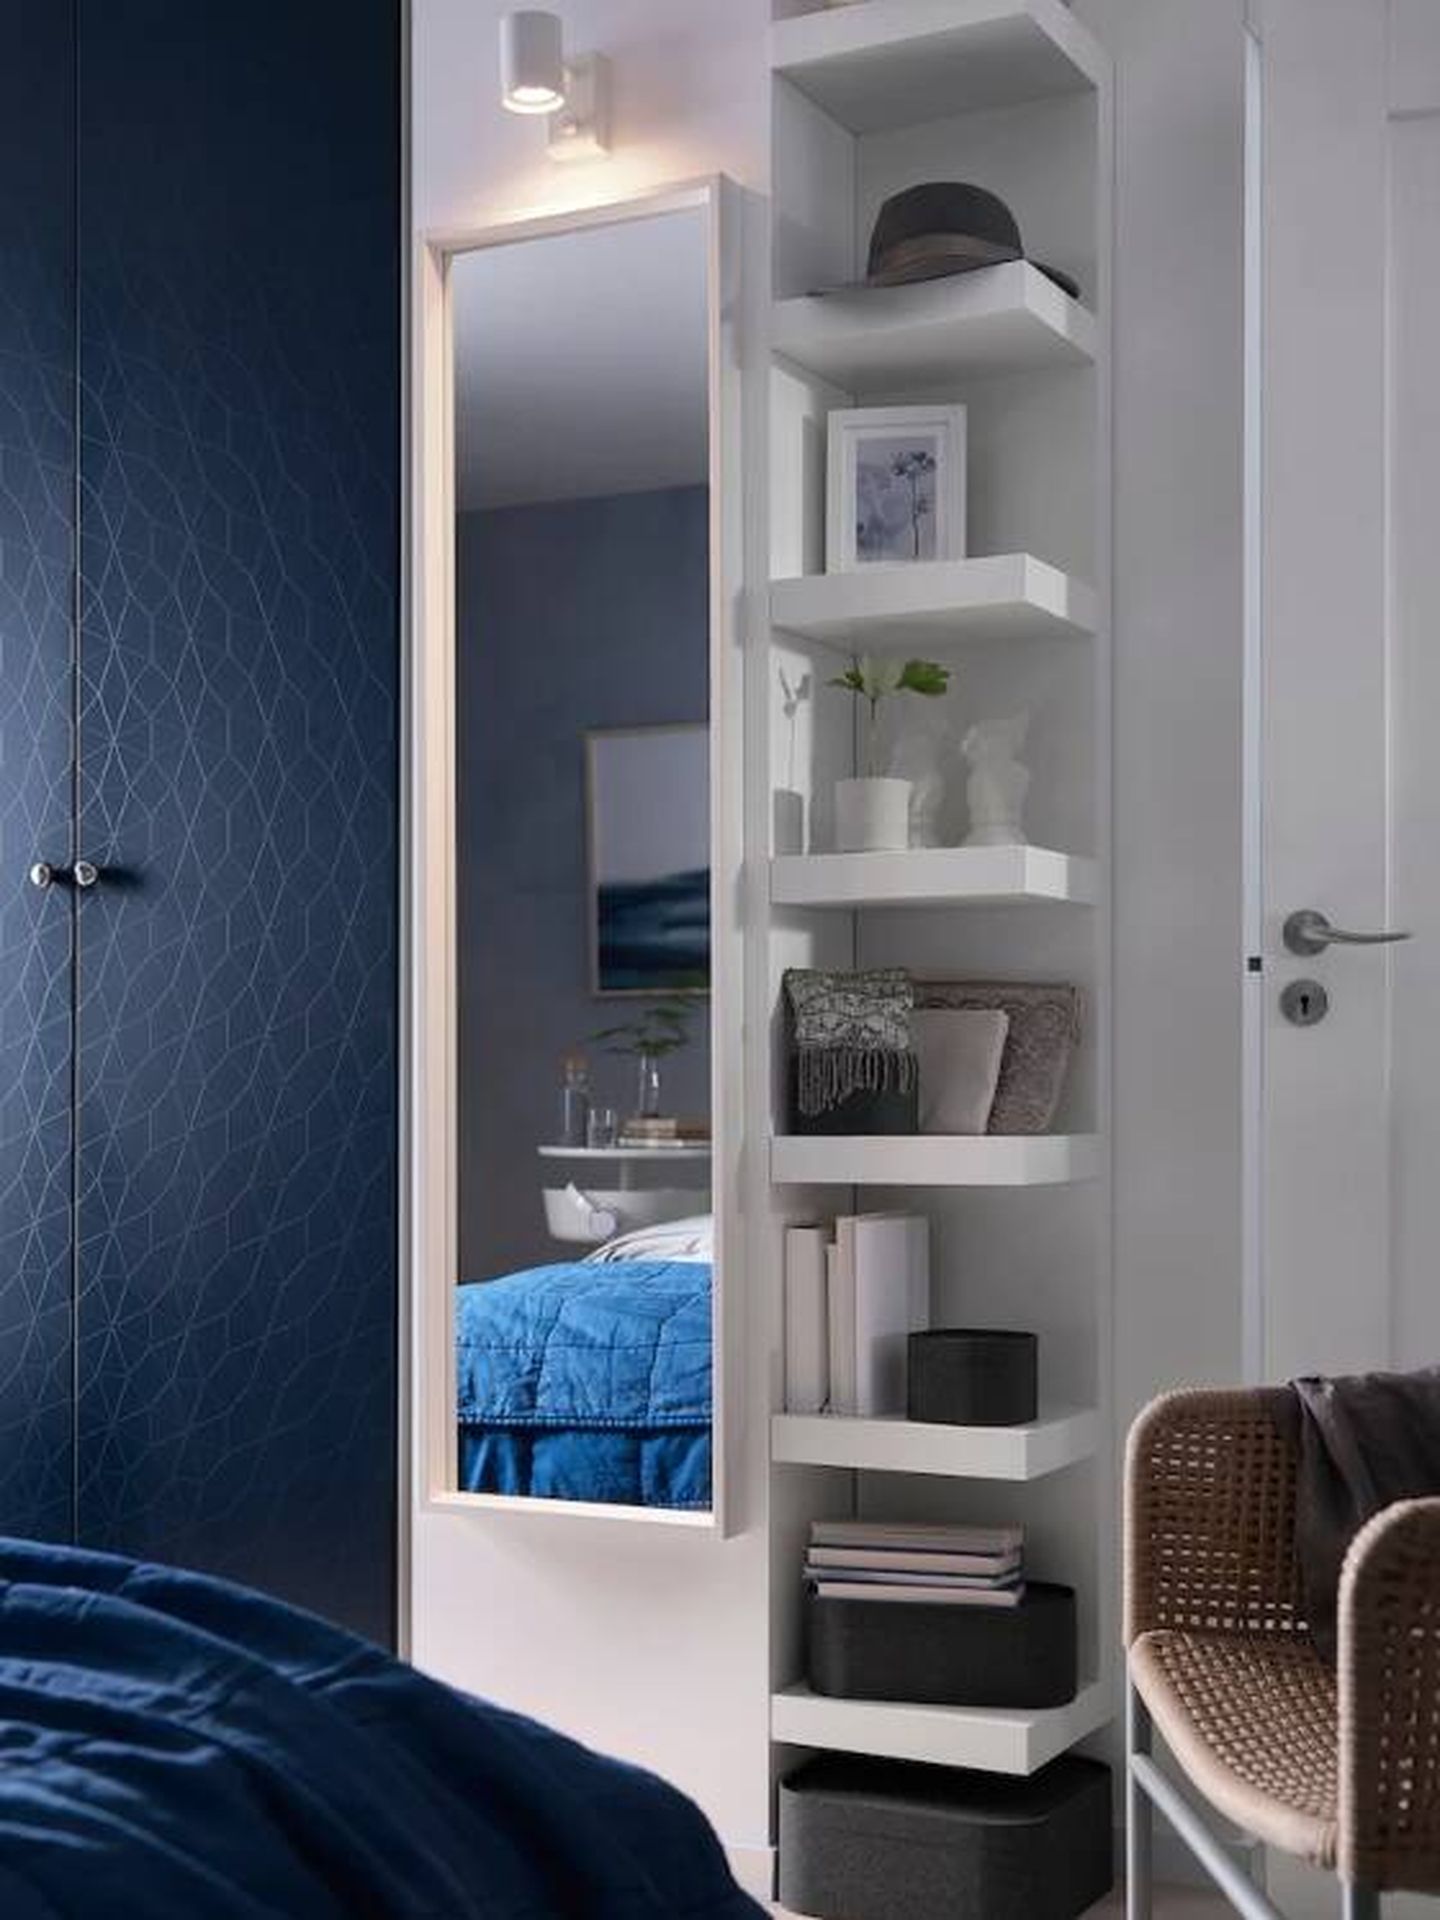 Una estantería de pared de Ikea para aprovechar una esquina de la habitación. (Cortesía)